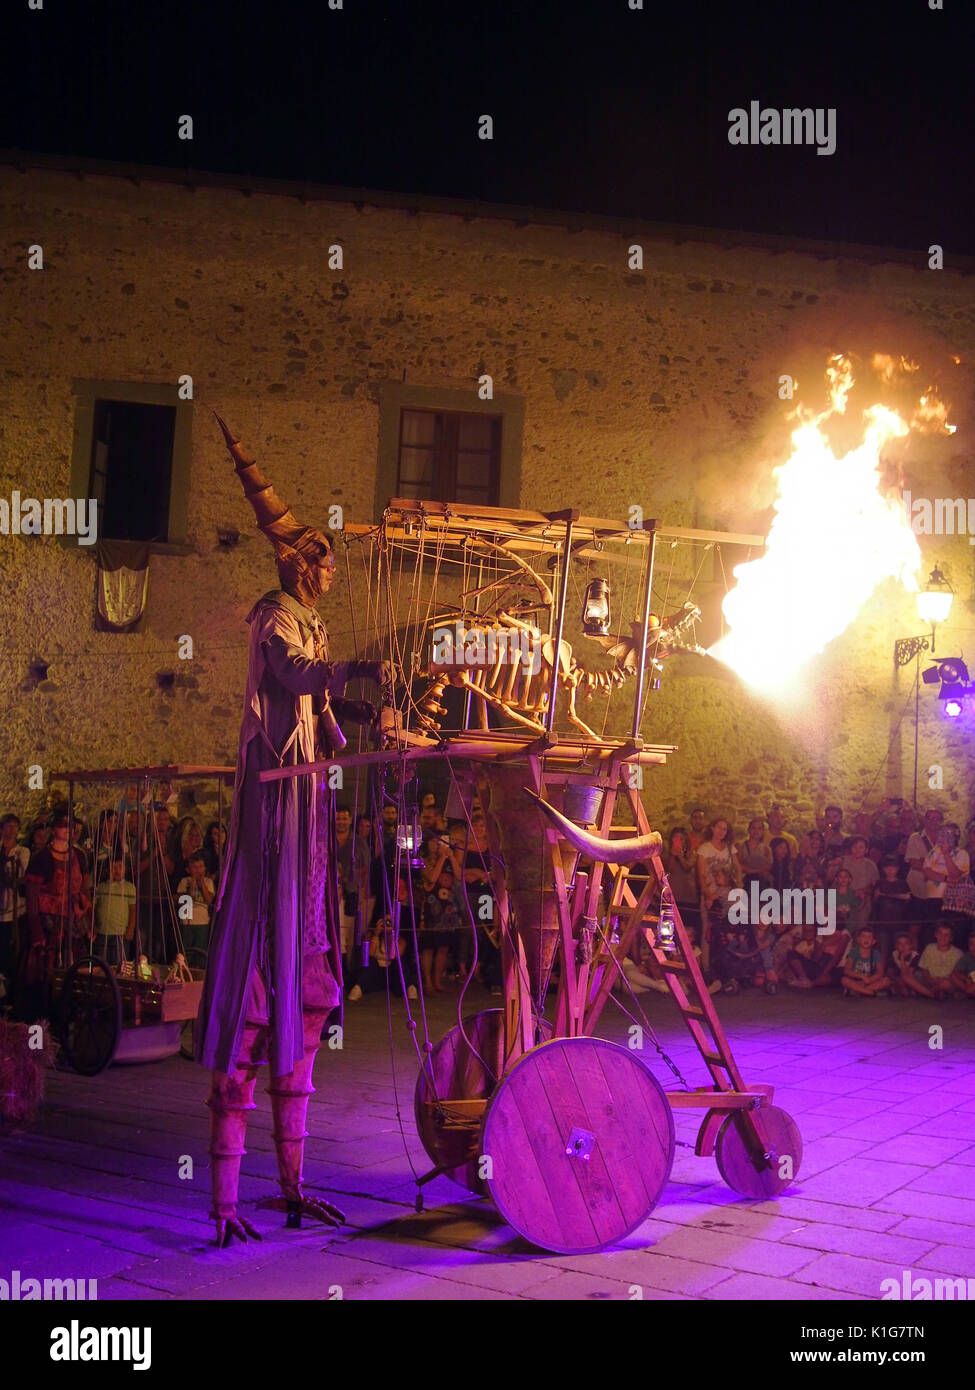 Filetto, ITALIEN - August 15,2017: Die jährliche Mittelalterlicher Markt. Hier Ottfried und seine feuerspeiende Drachen die Massen unterhalten. Stockfoto